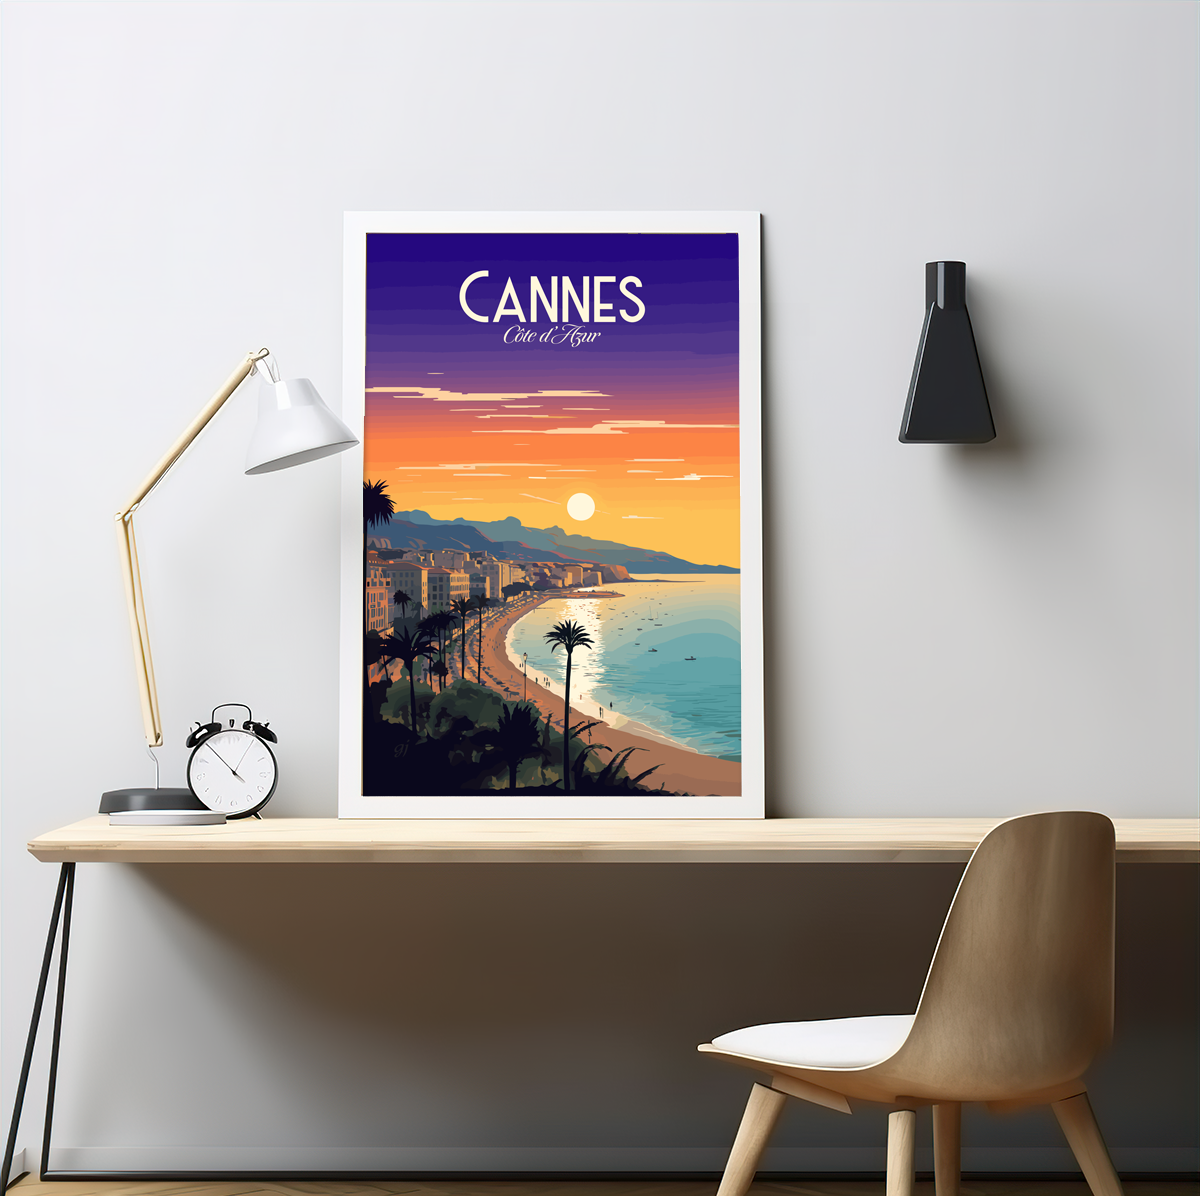 Cannes - La Croisette poster by bon voyage design